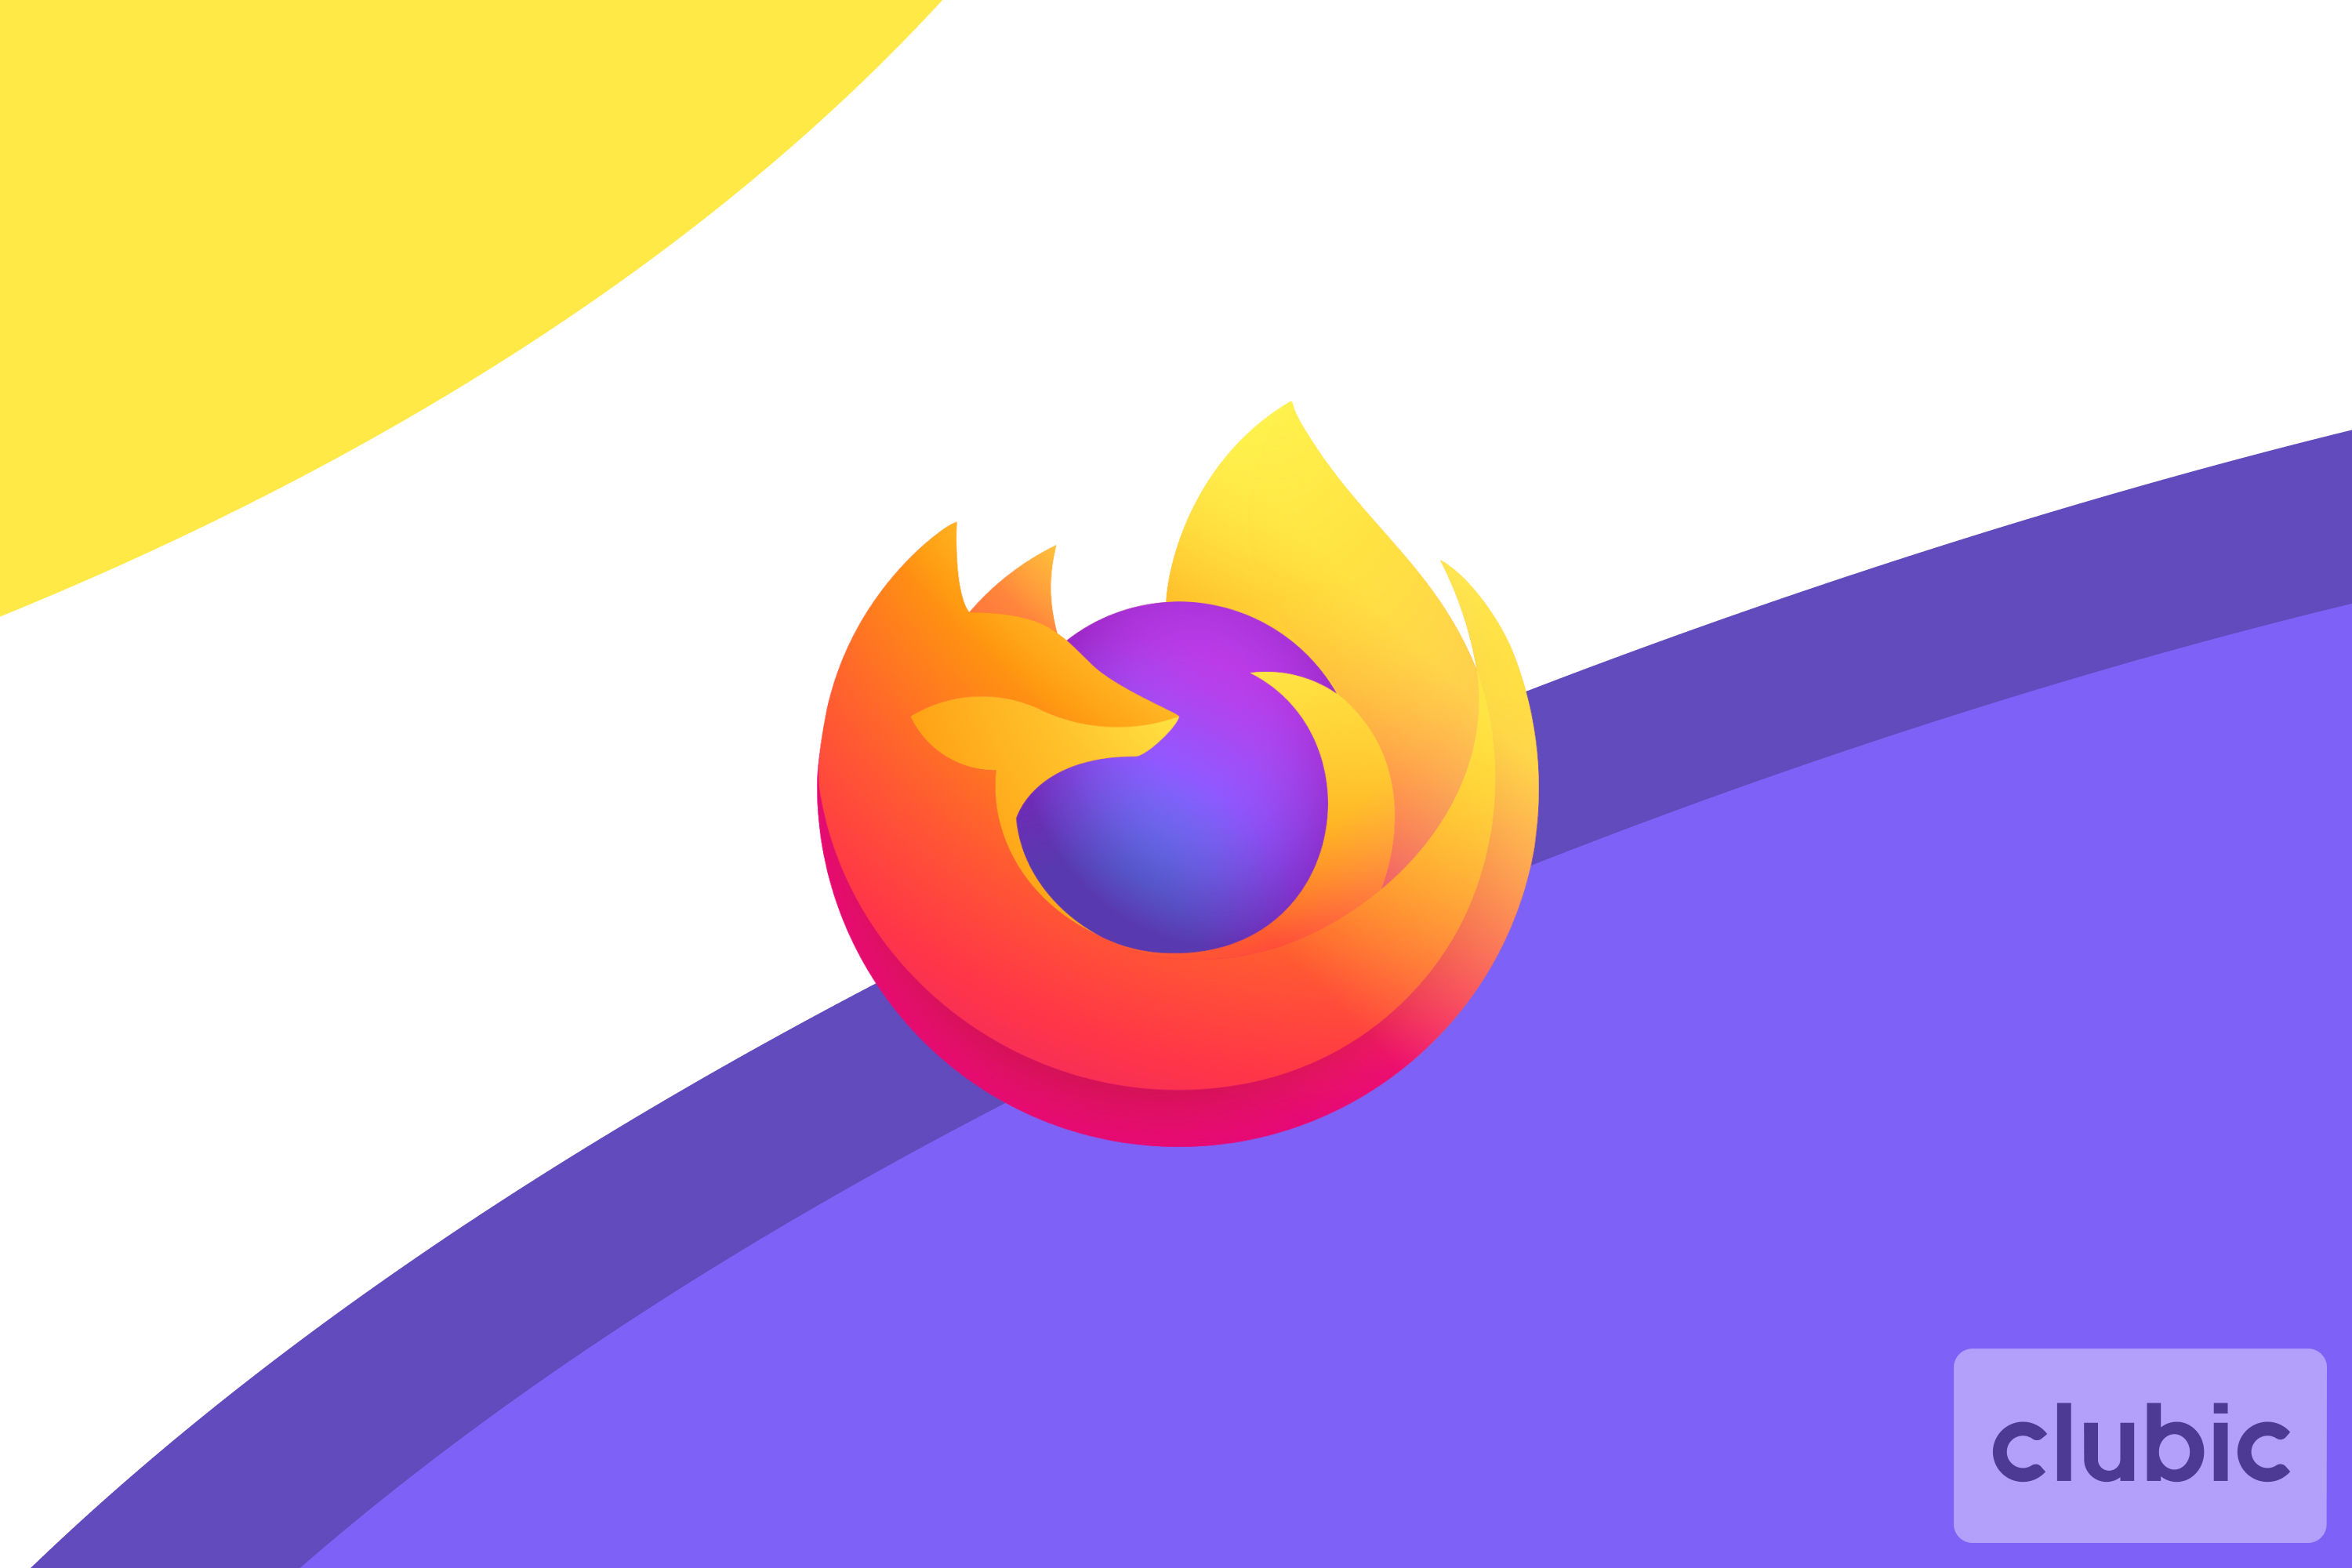 Firefox 92 déploie son moteur WebRender pour tirer parti des GPU